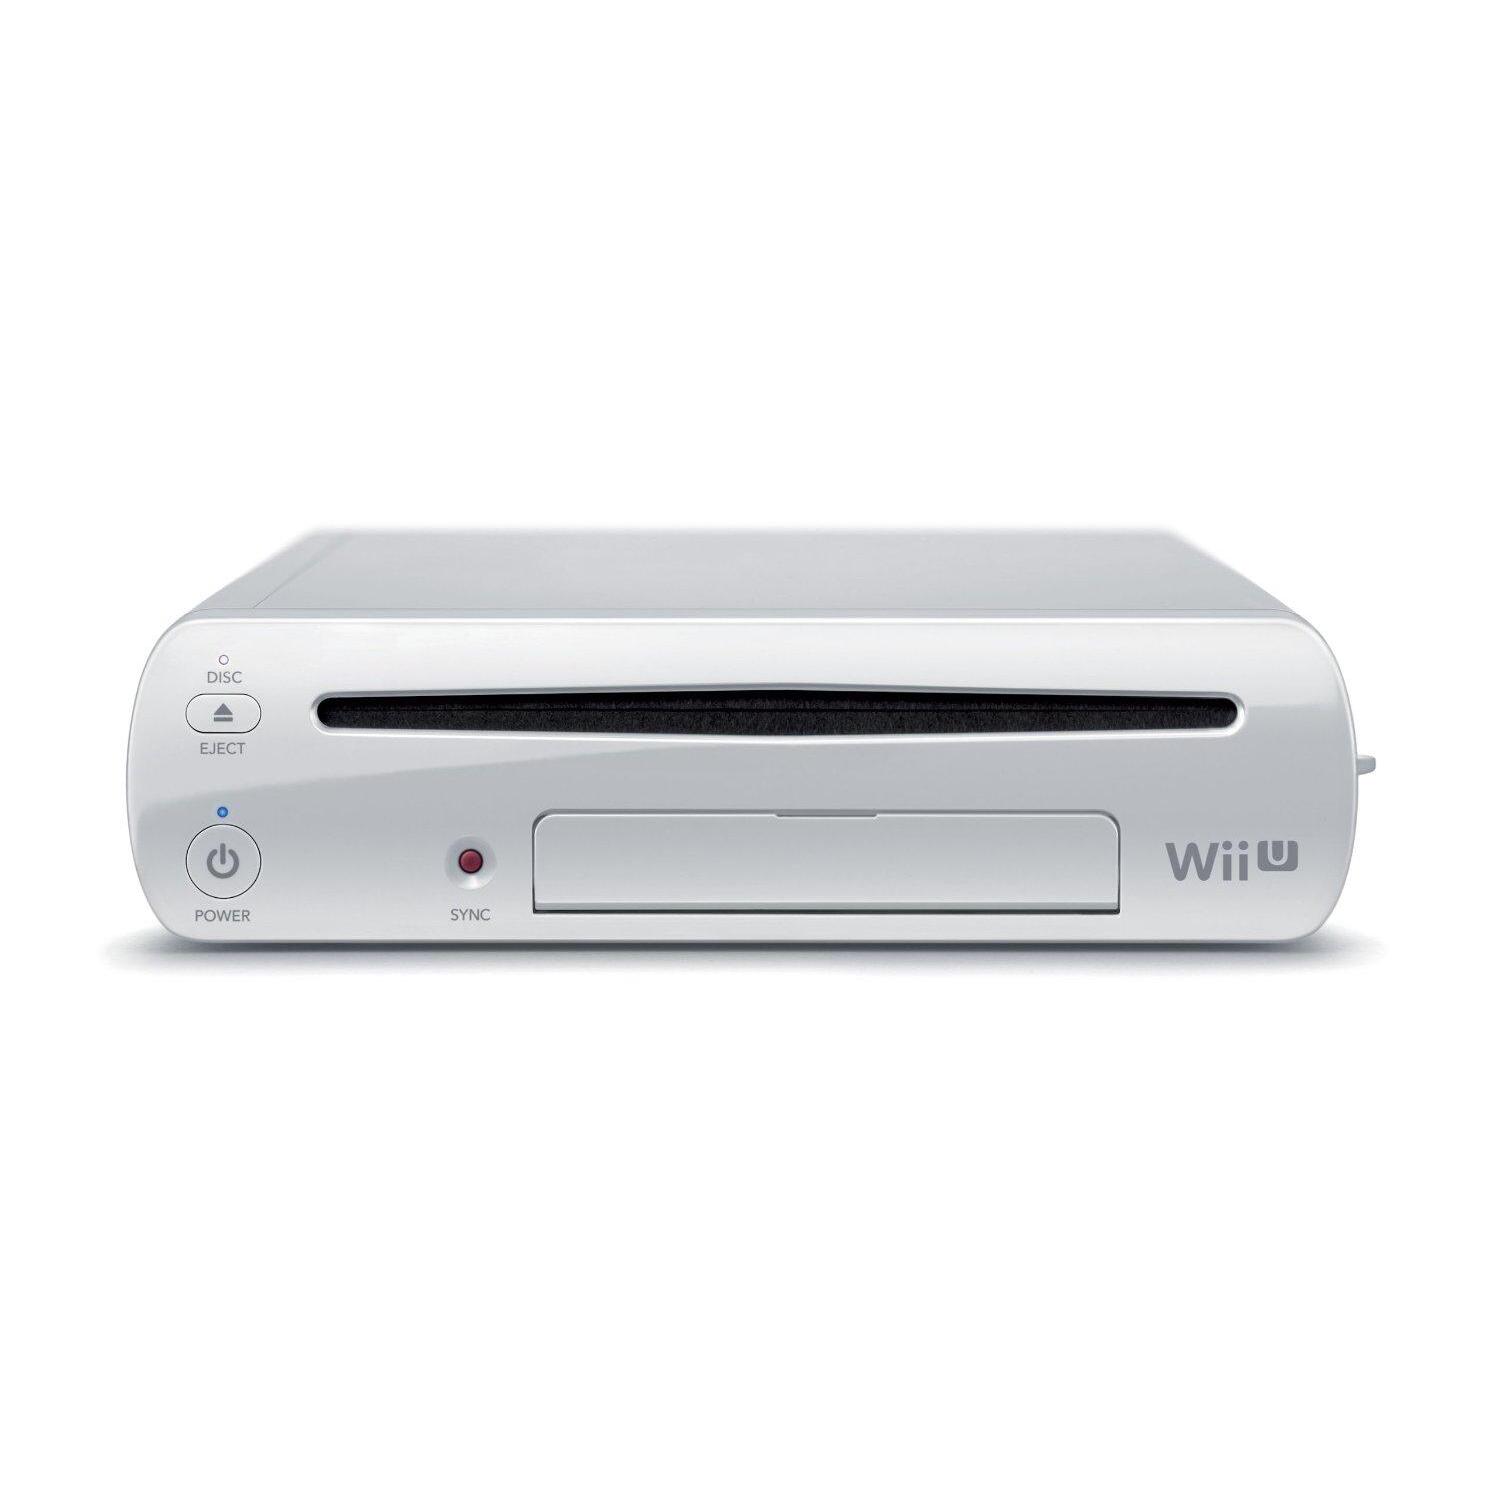 munt mannetje Christus Wii U Console (8GB / 16GB) - Wit (Wii) kopen - €53